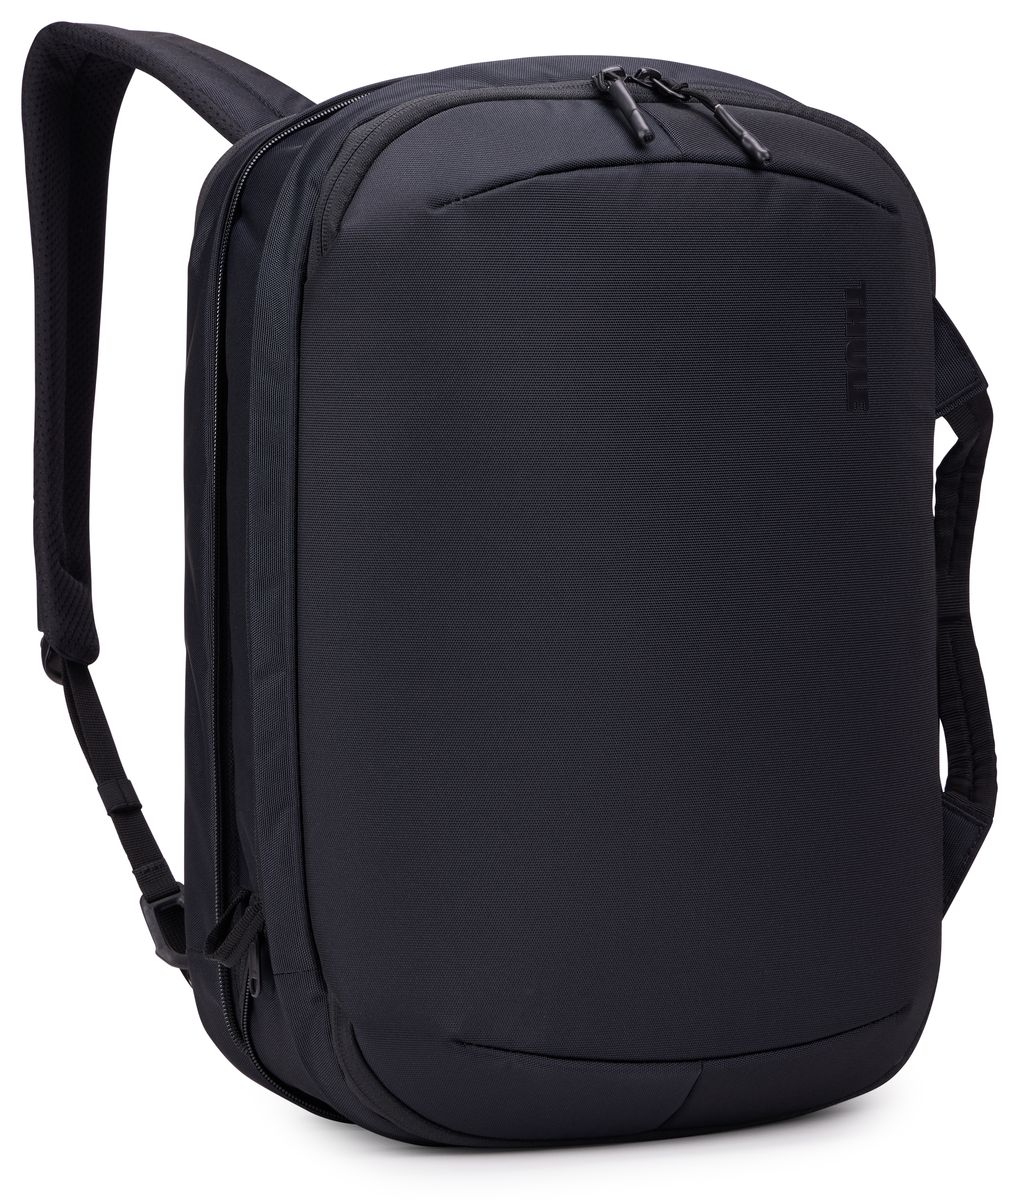 Thule Subterra 2 hybridní cestovní taška/batoh TSBB401 - černá